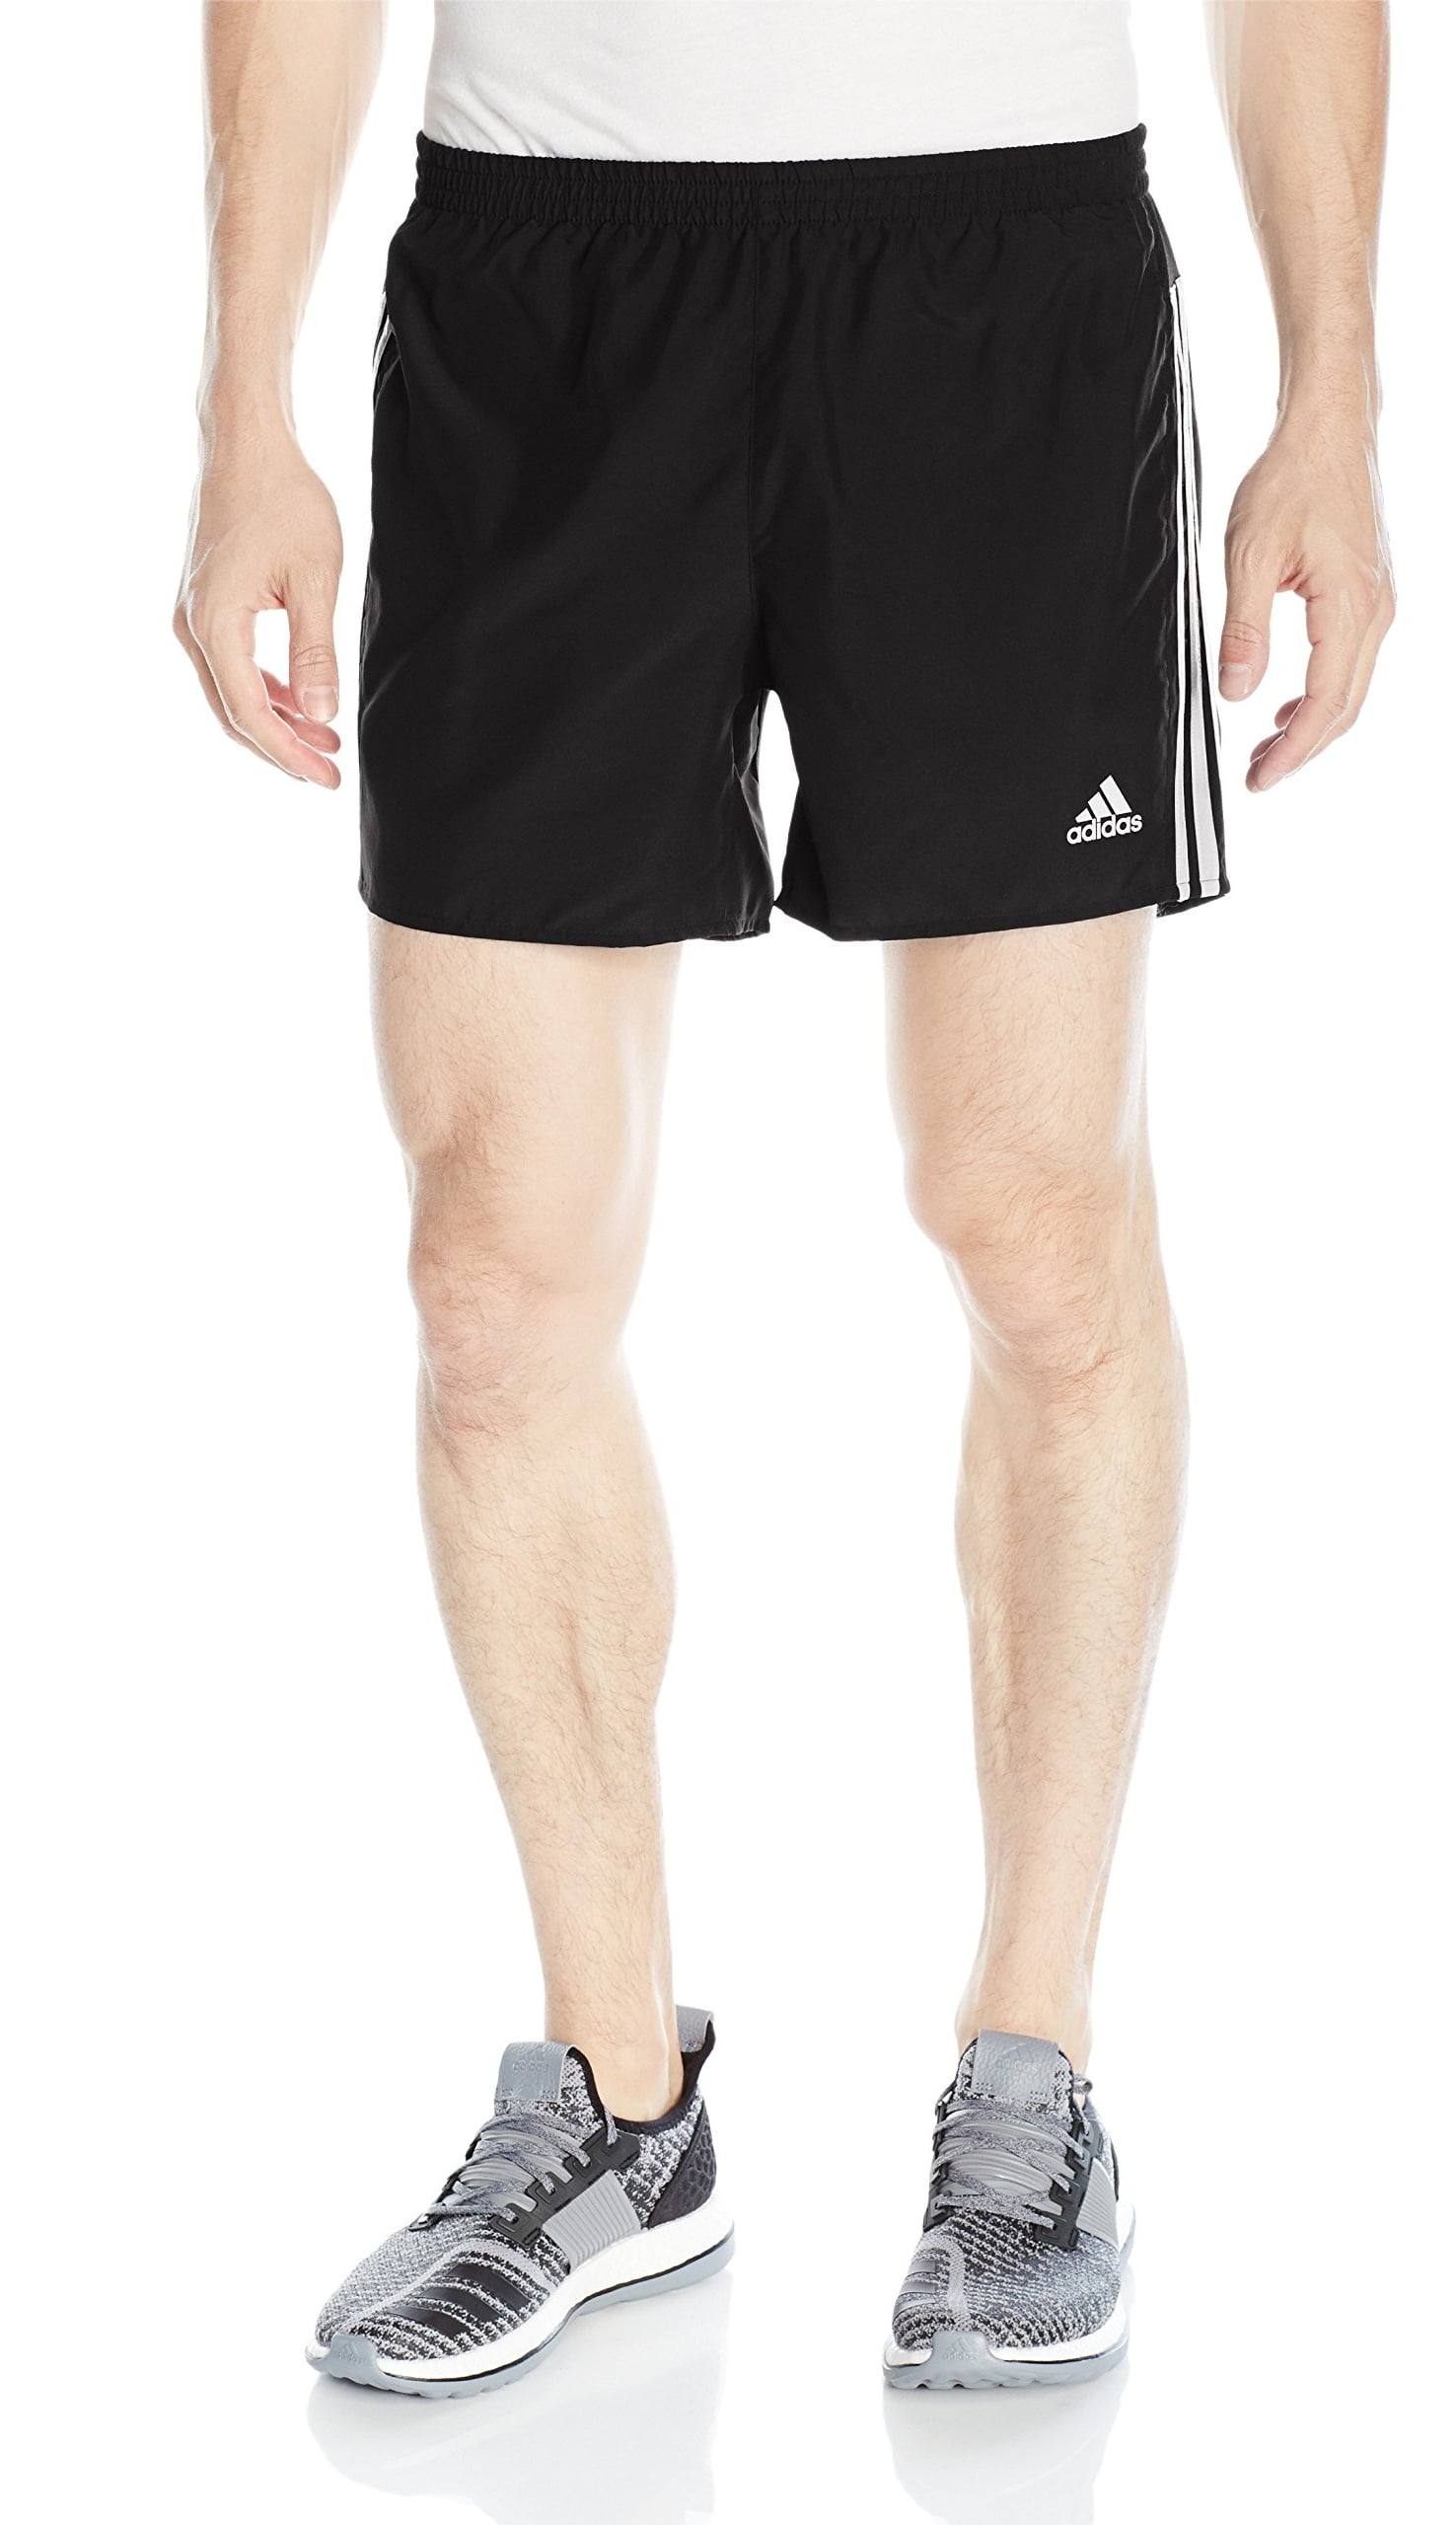 adidas response shorts